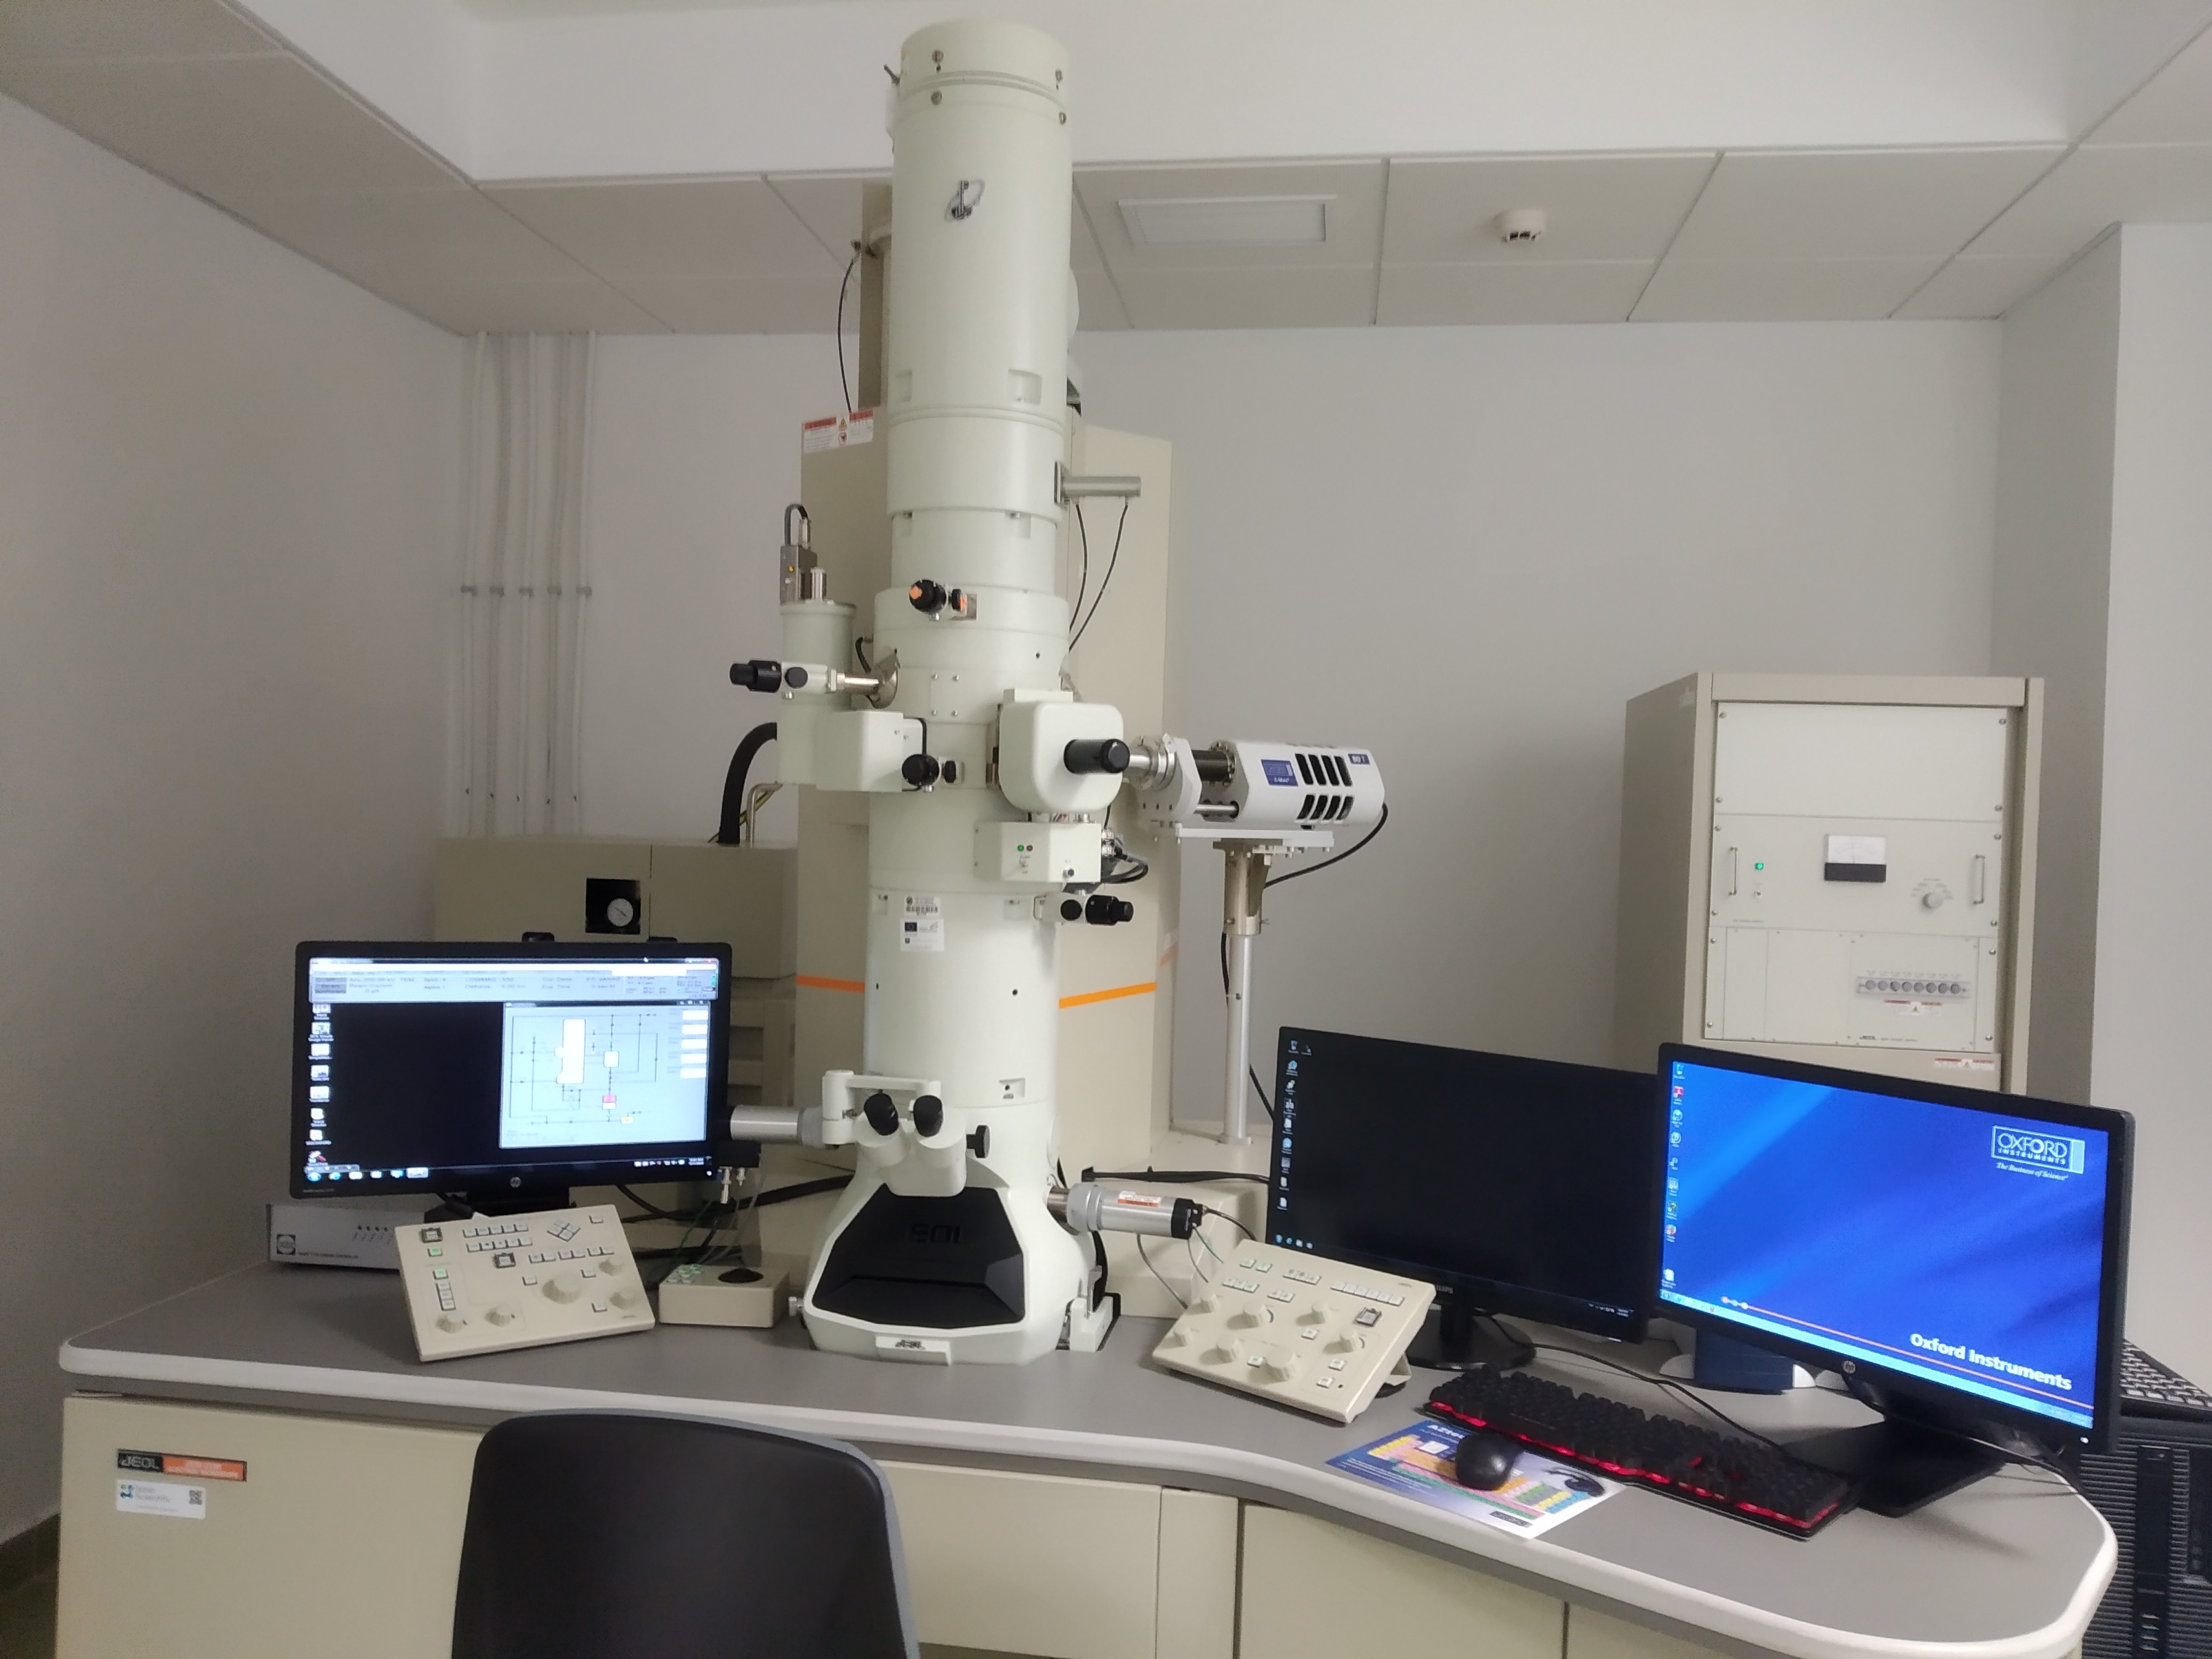 alfiler tengo hambre Espinas Microscopía Electrónica de Transmisión (TEM) - Universidad de Almería